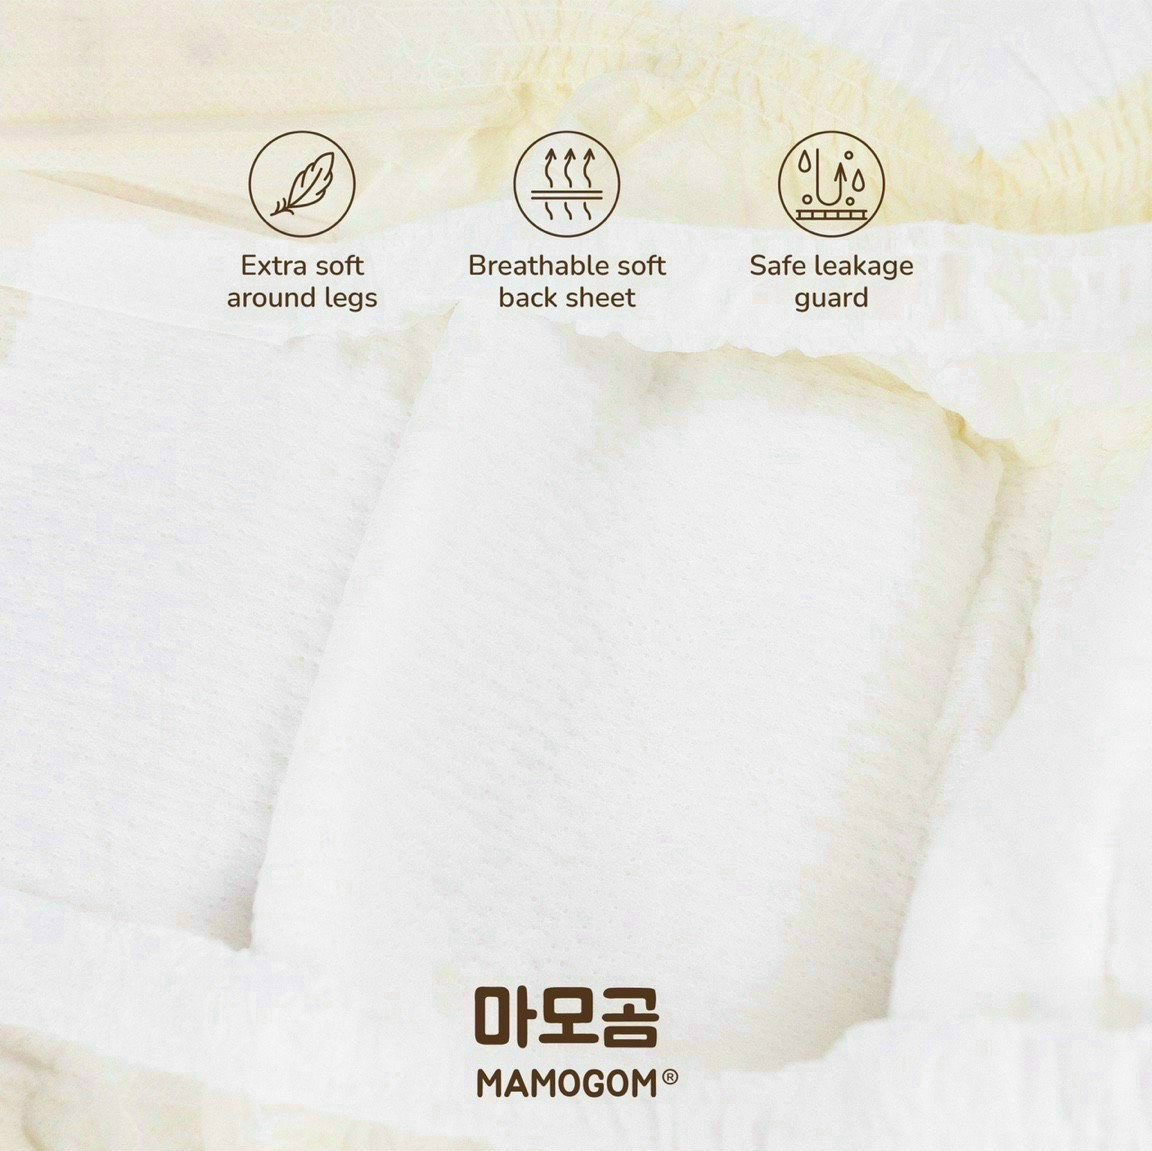 Tã/Bỉm hữu cơ organic cotton cao cấp MAMOGOM công nghệ Hàn Quốc dán/quần đủ size NB/S/M/M/L/XL/XXL cho bé